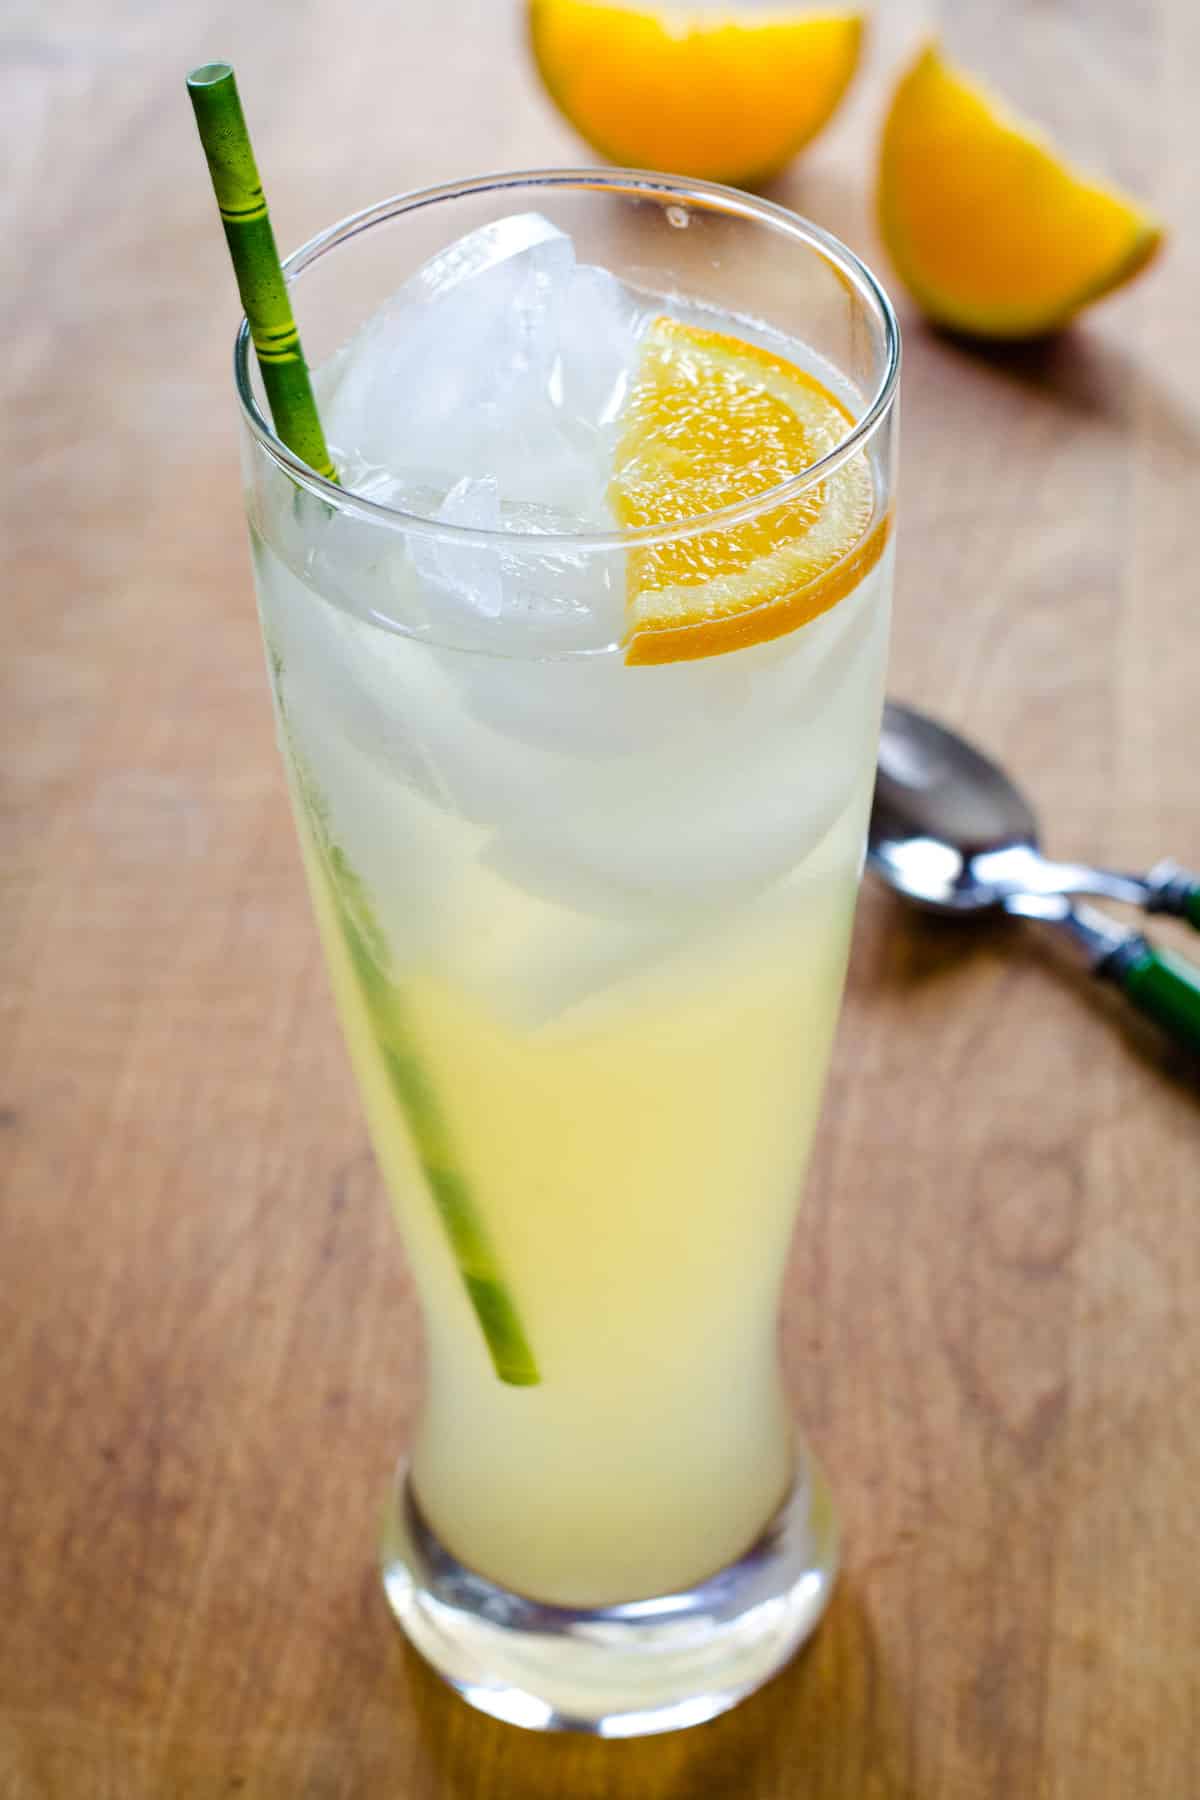 Glass of honey lemonade